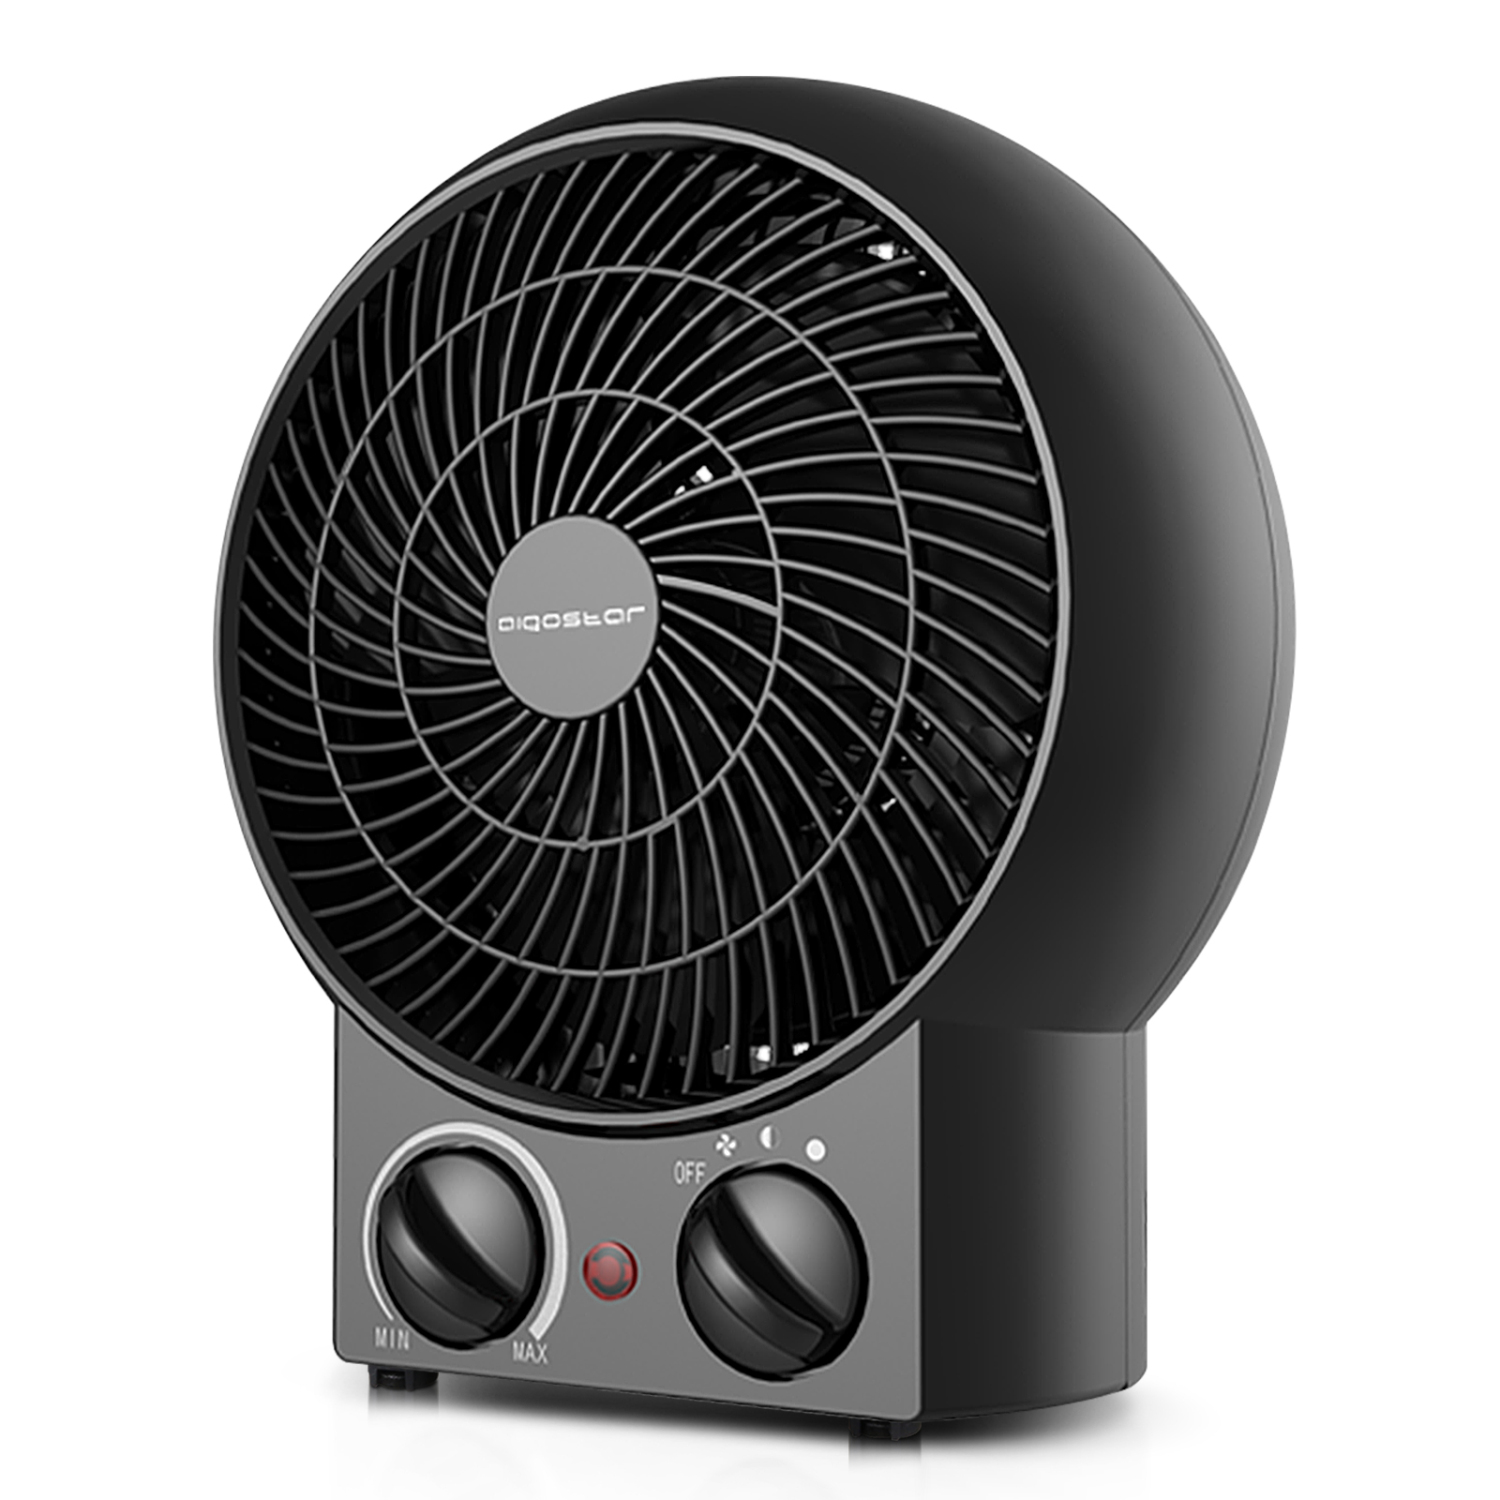 Aigostar Airwin Black 33IEL - TermoVentilatore con Termostato Regolabile, Funzione Doppia Aria Calda e Fredda, 2000 Watt con protenzione anti-surriscaldamento. Design esclusivo.